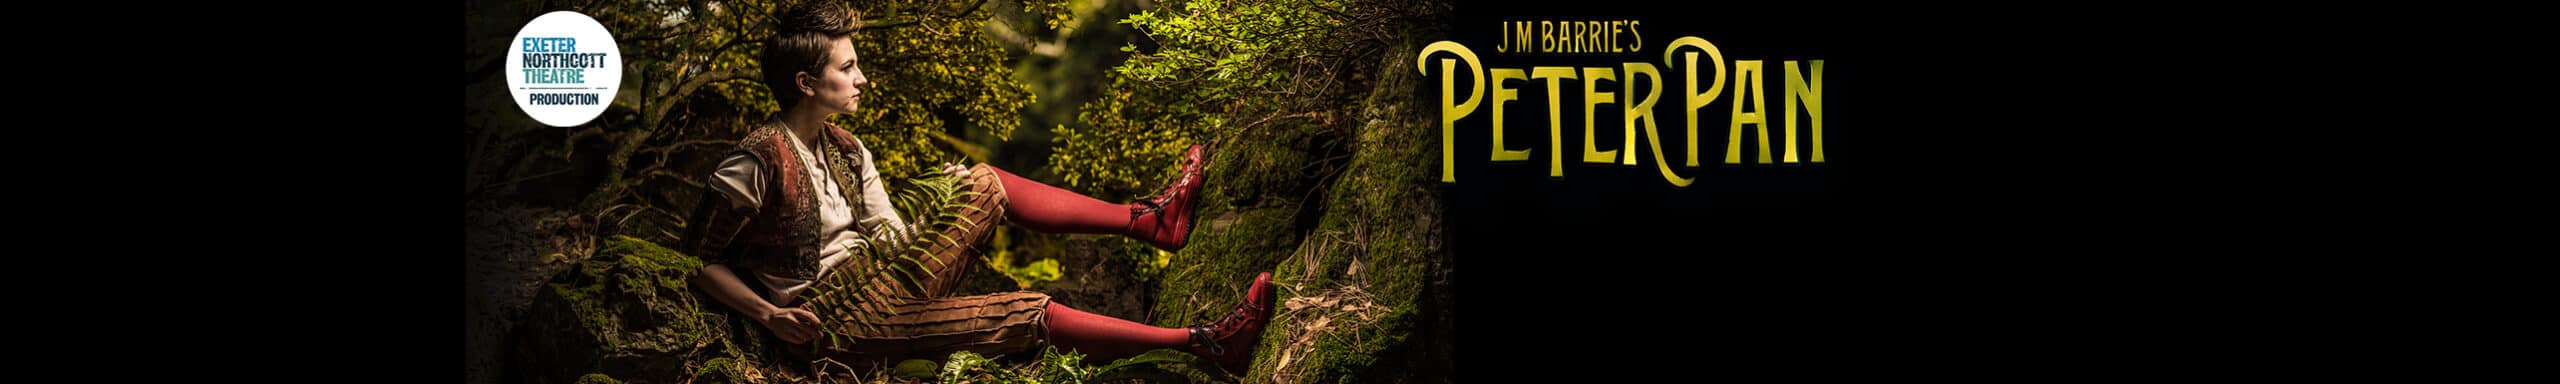 Peter Pan promotional poster